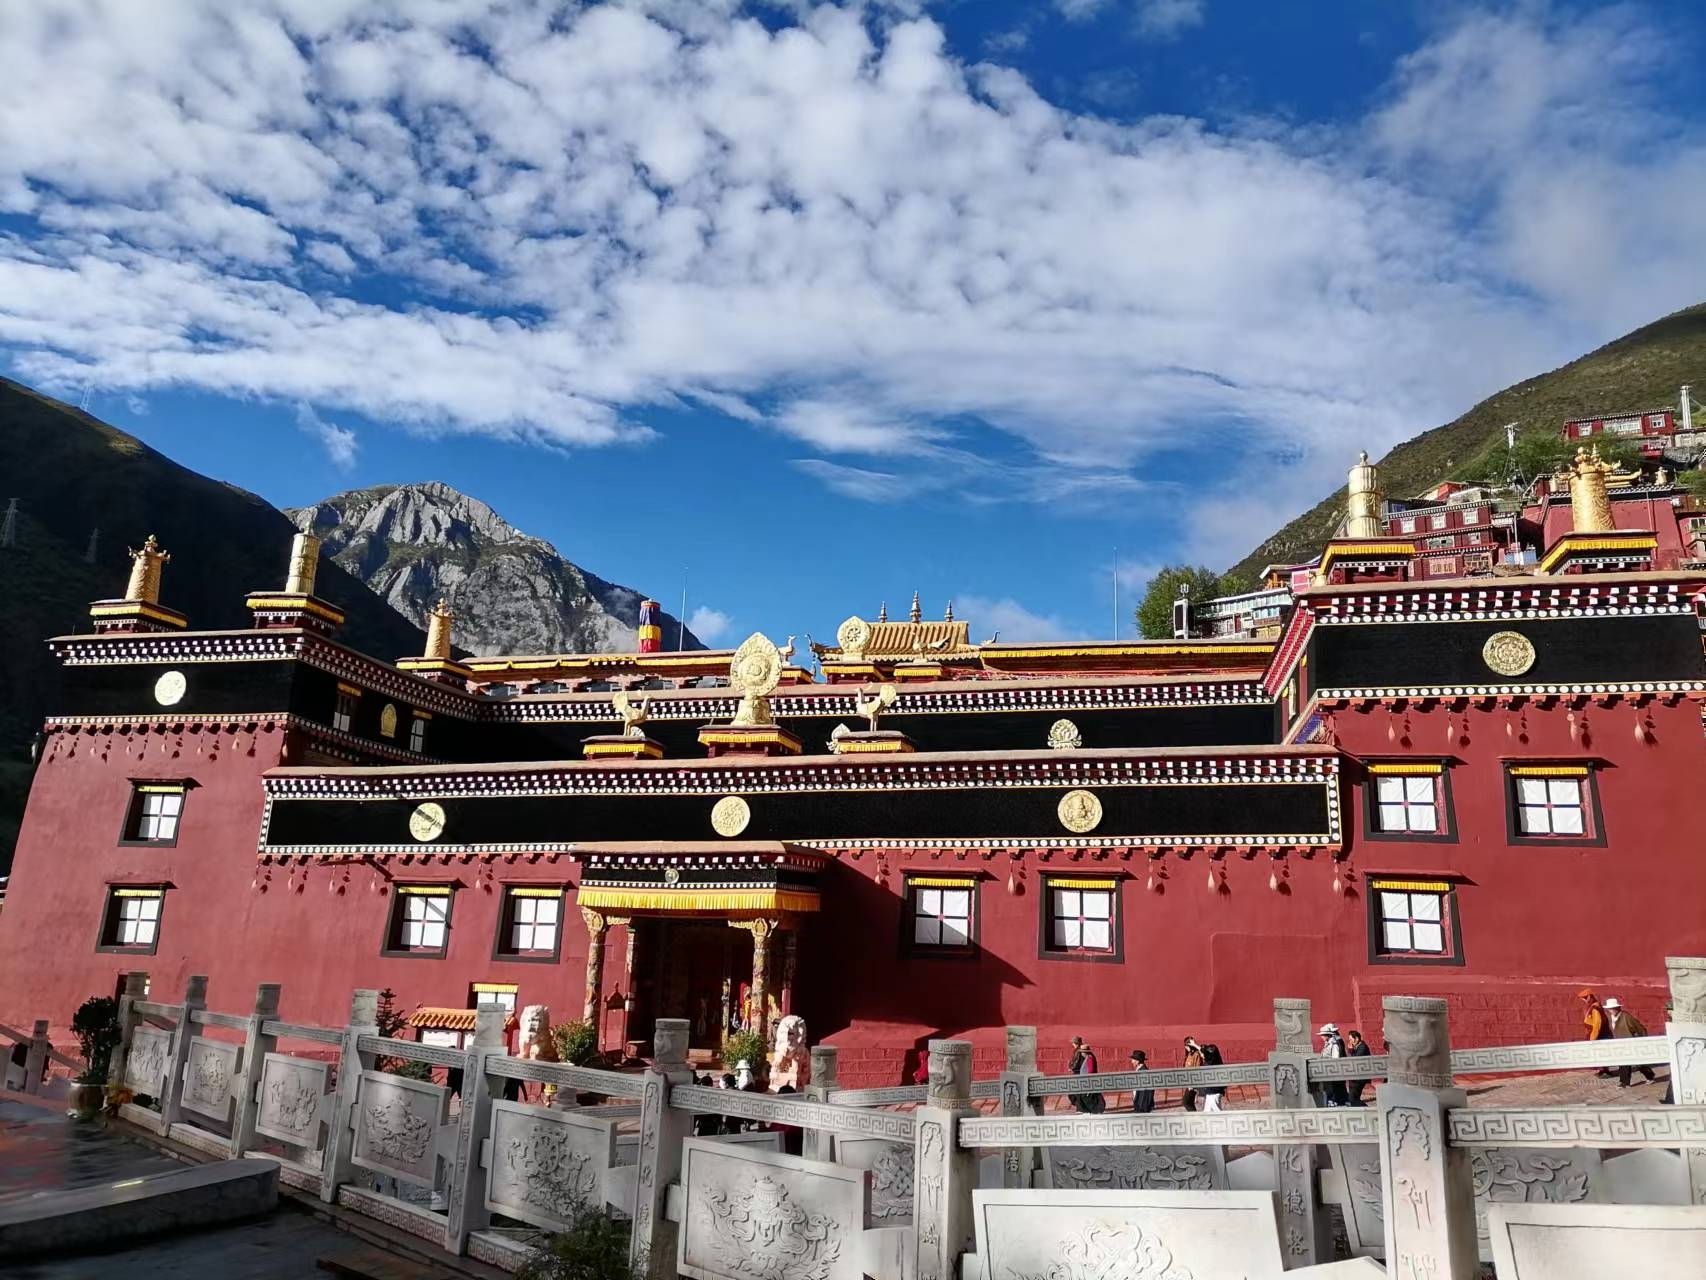 #发现宝藏旅游地 #发现旅途的色彩 德格印经院是整个康巴藏区的文化中心，它属于藏传佛教格鲁派（黄教）